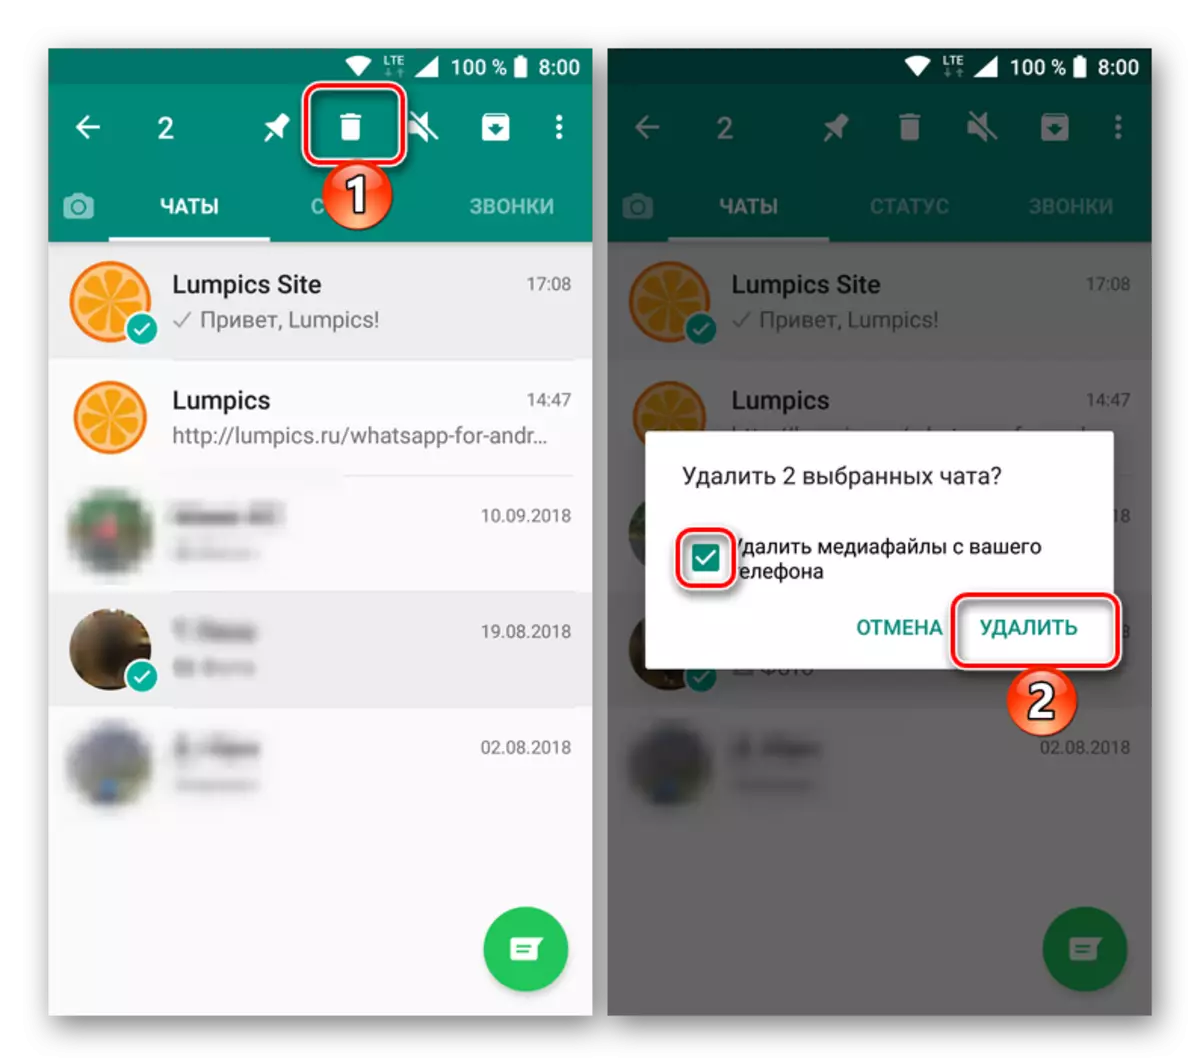 Rimozione di diverse chat selezionate in Messenger Vatsap per Android